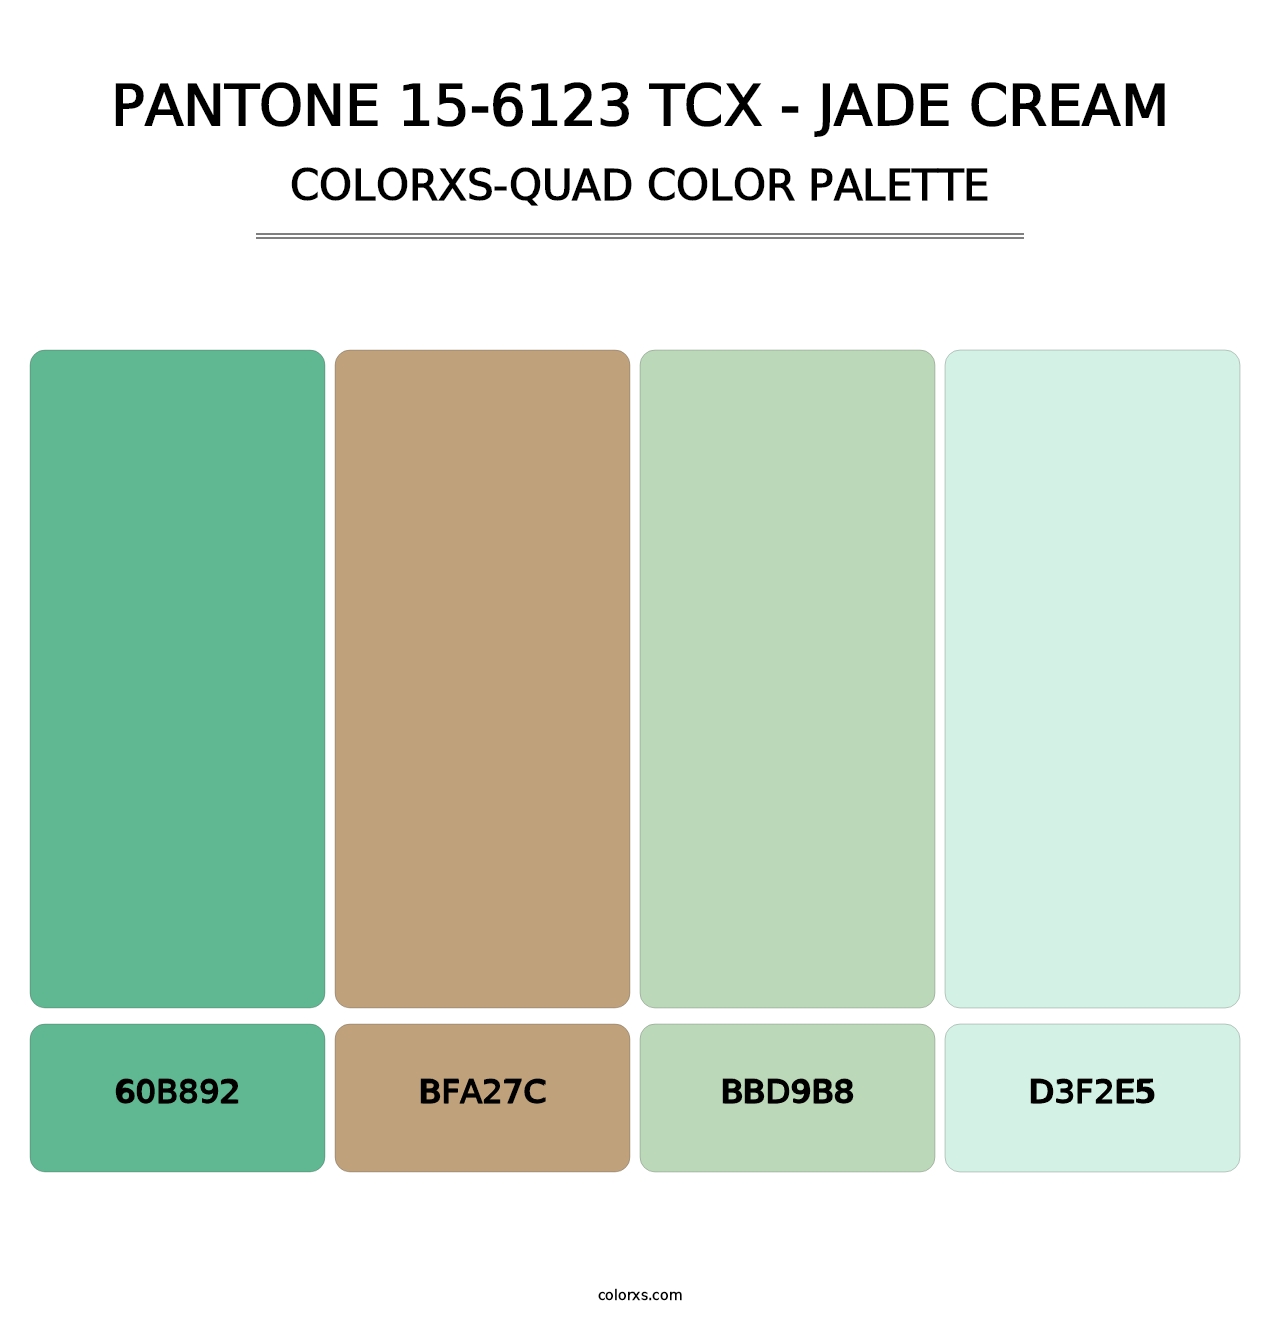 PANTONE 15-6123 TCX - Jade Cream - Colorxs Quad Palette